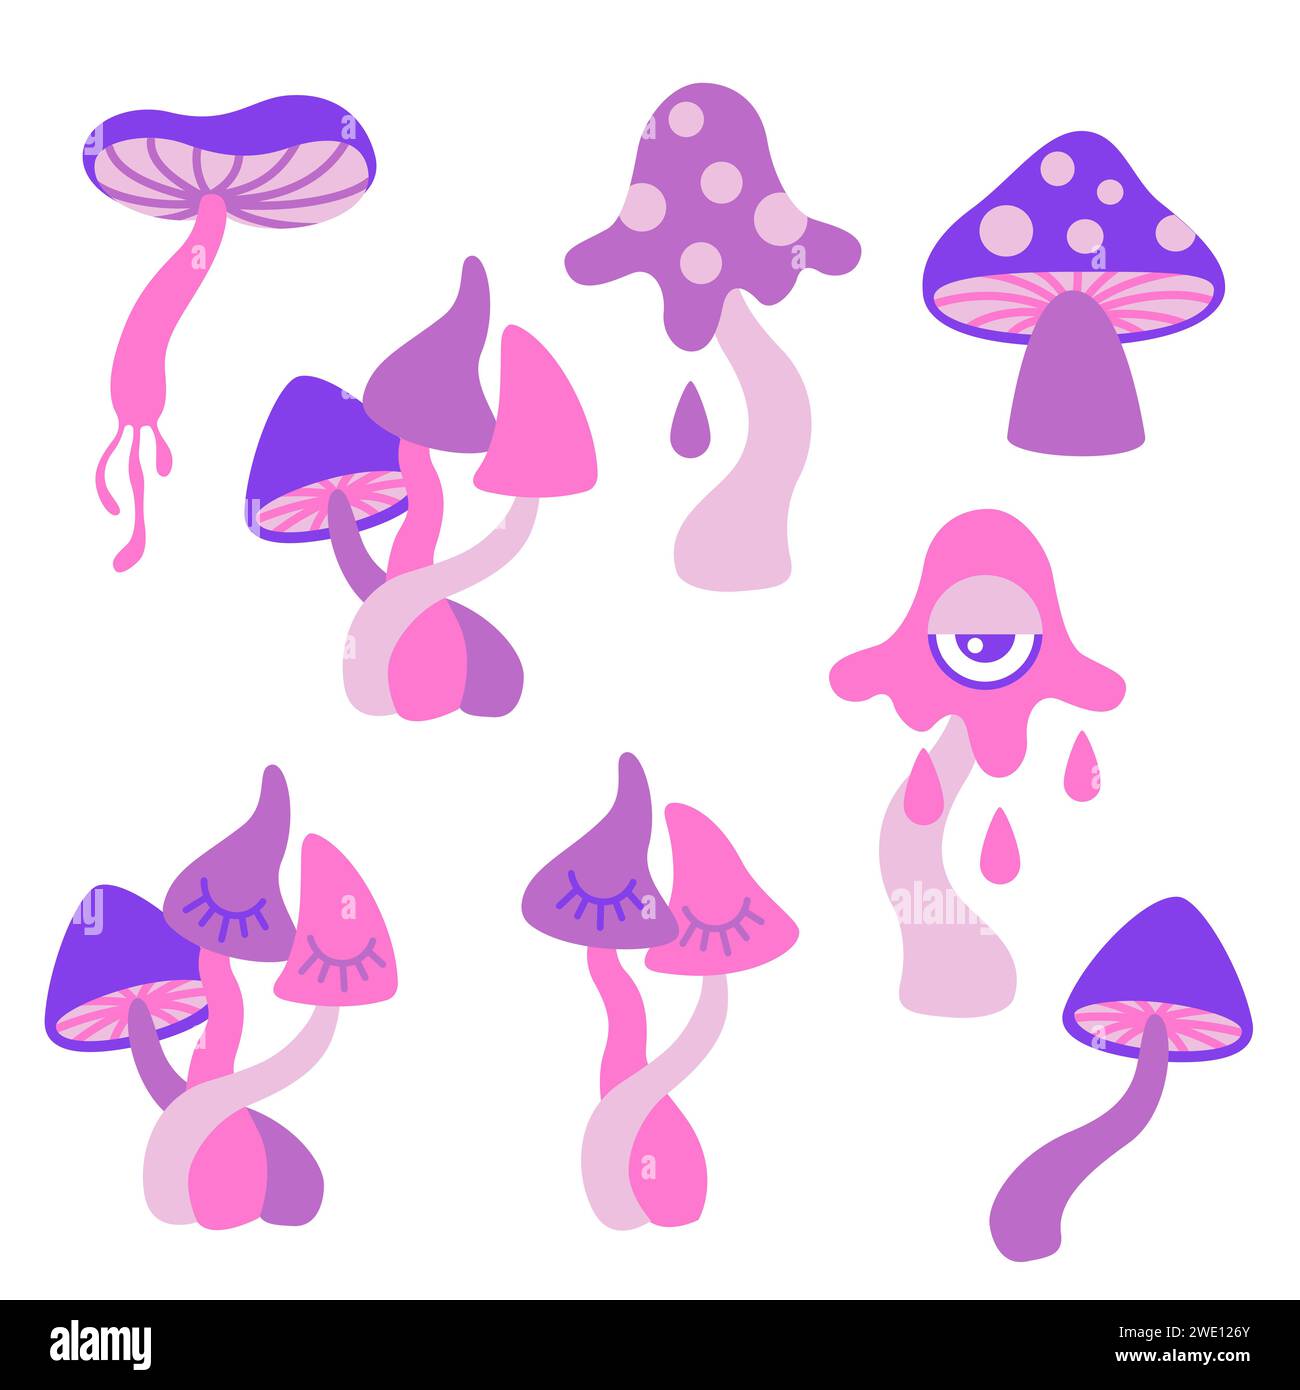 Illustrazione vettoriale disegnata a mano. Set di funghi psichedelici in stile cartone animato piatto Illustrazione Vettoriale